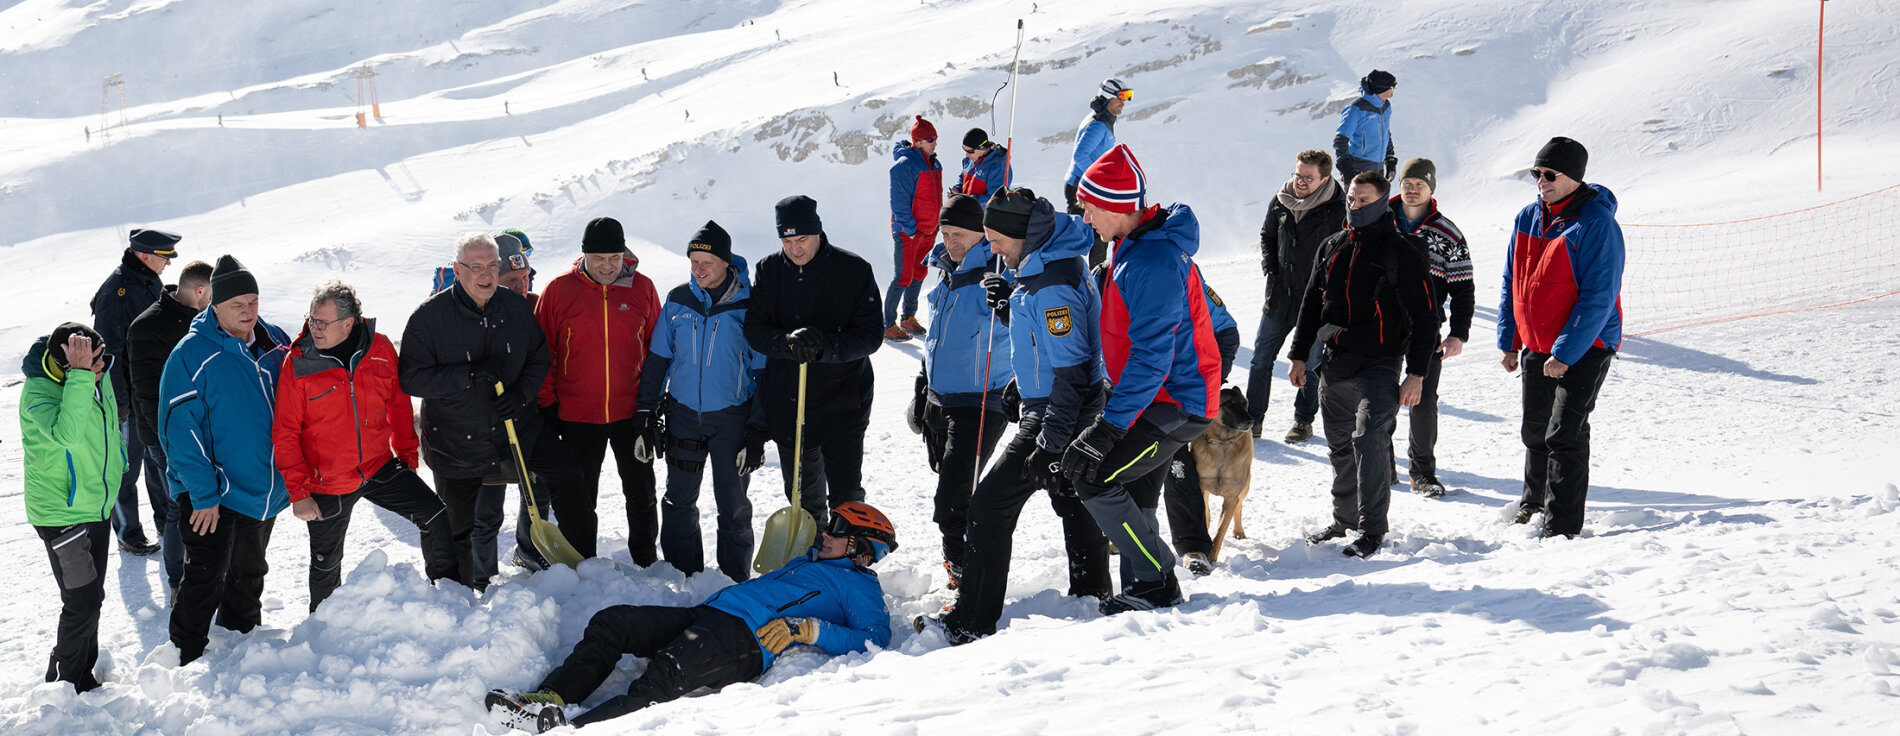 Mehrere Personen stehen mit Schaufeln um eine im Schnee liegende Person herum